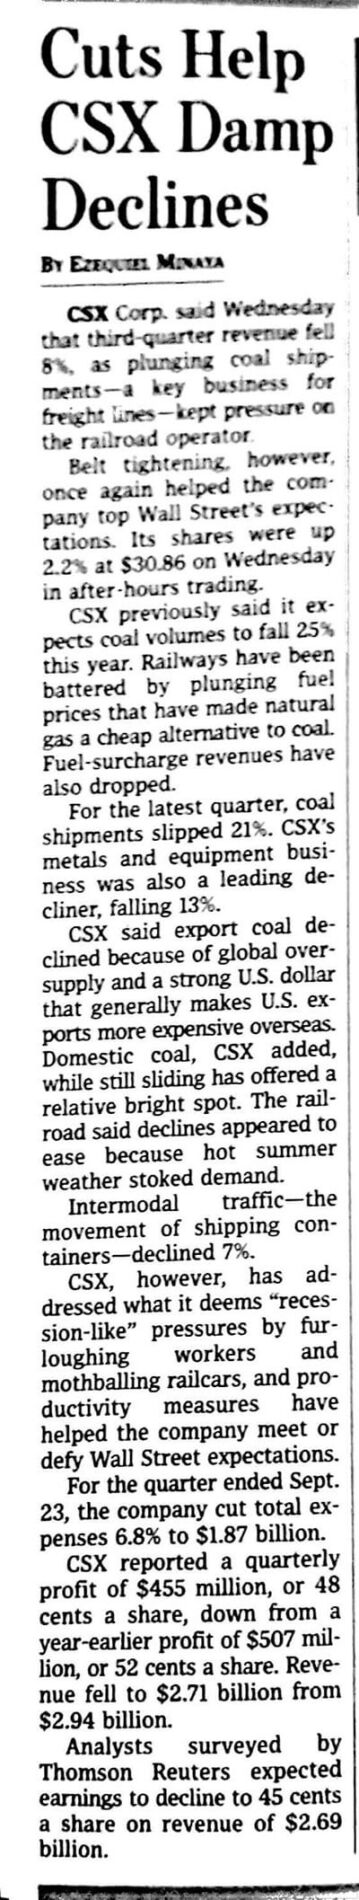 CSX Rail, CSX, Rail, Plus Technologies, OM Plus, Wall Street Journal, WSJ, Cuts Help CSX Damp Declines